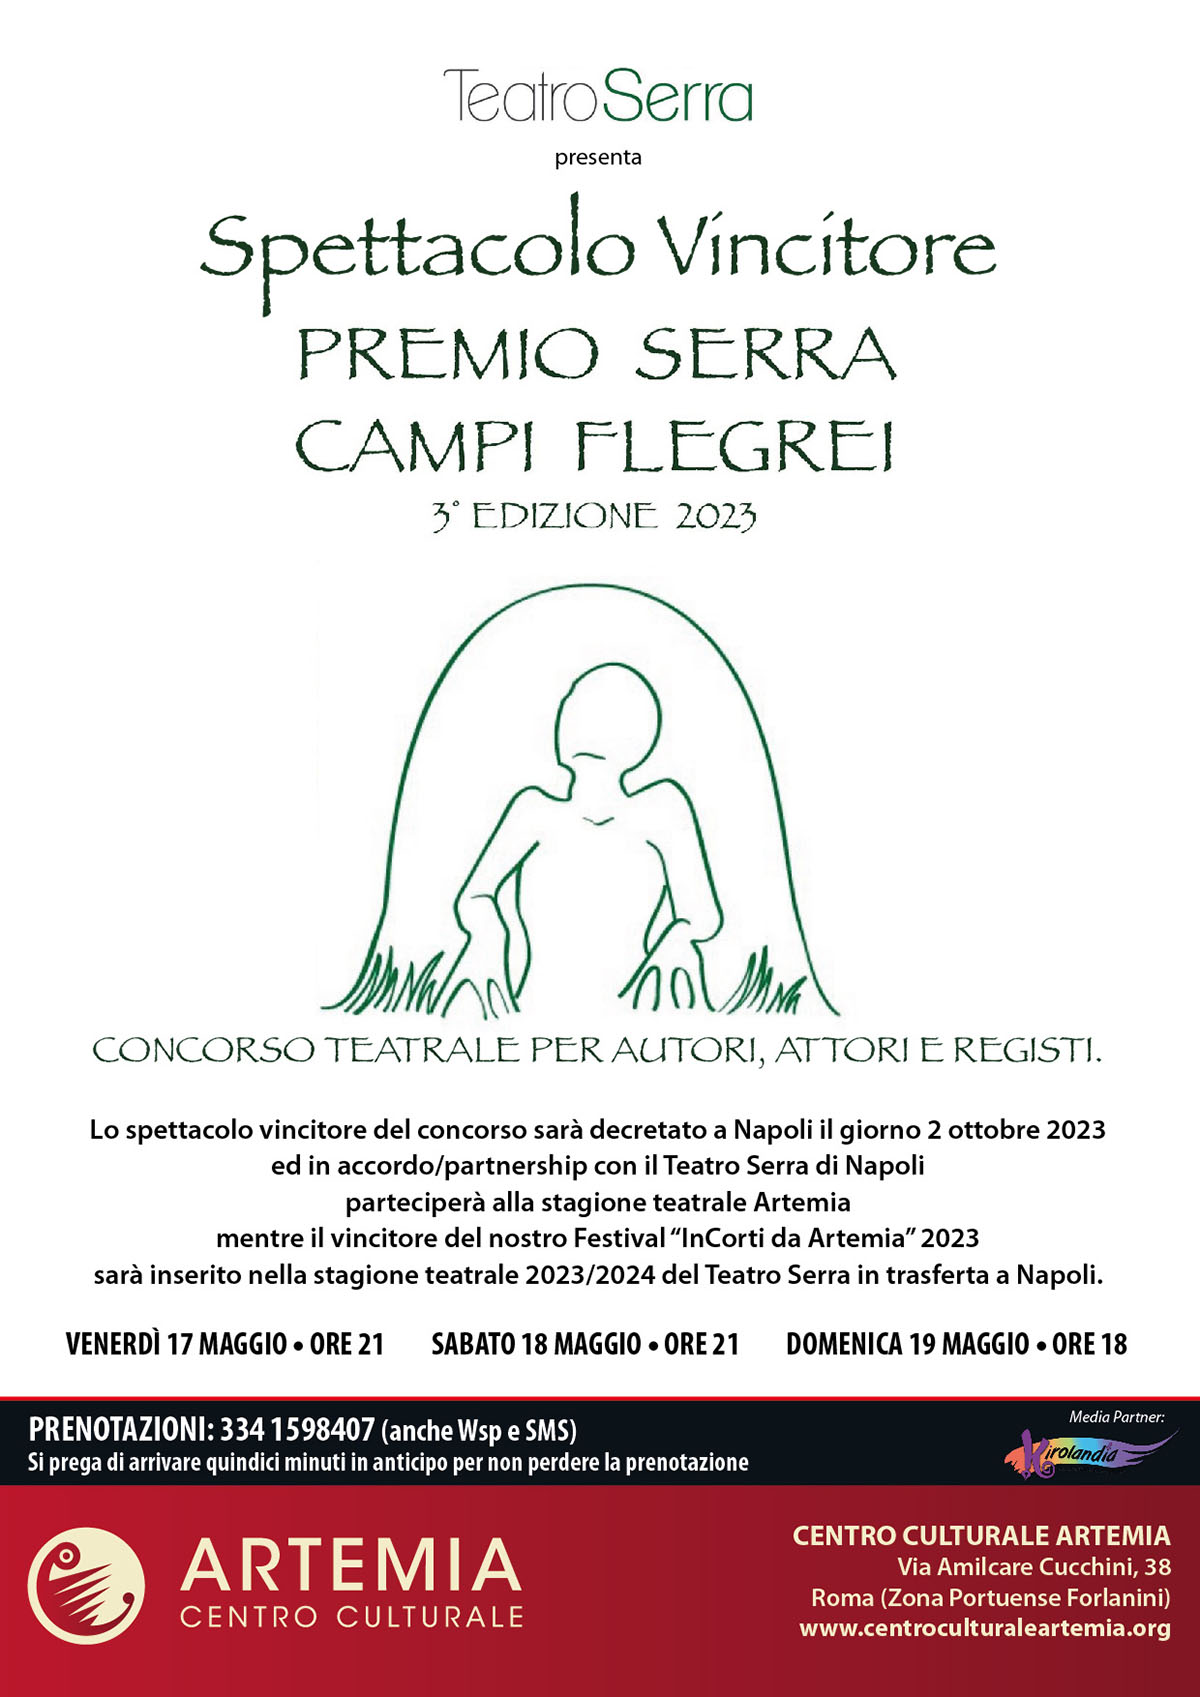 Spettacolo Vincitore Del “Premio Serra Campi Flegrei 2023”